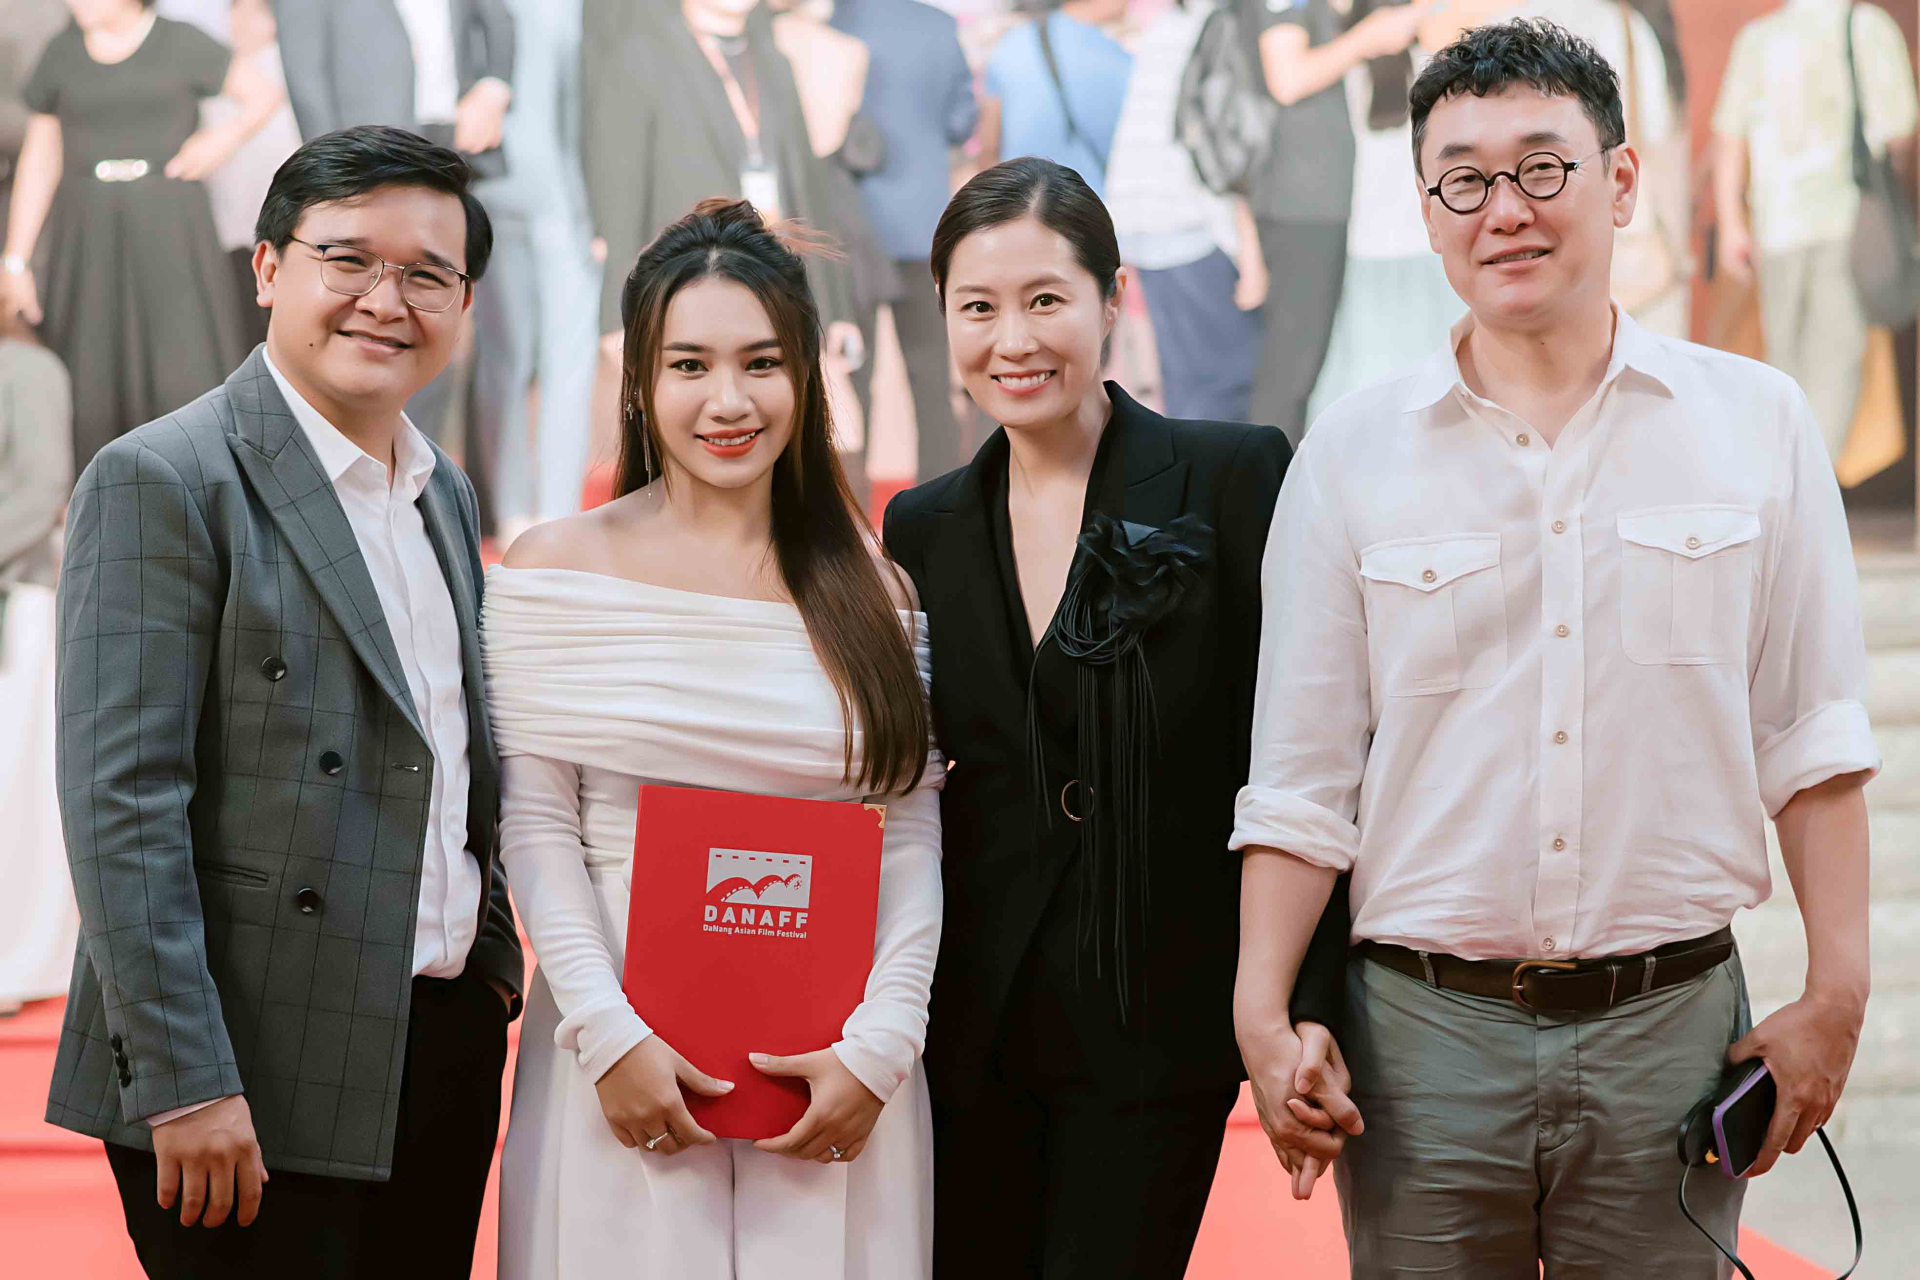 Năm nay, vợ chồng Võ Thanh Hòa - Mai Bảo Ngọc tham gia Liên hoan phim châu Á Đà Nẵng (DANAFF) ngay từ ngày khai mạc.